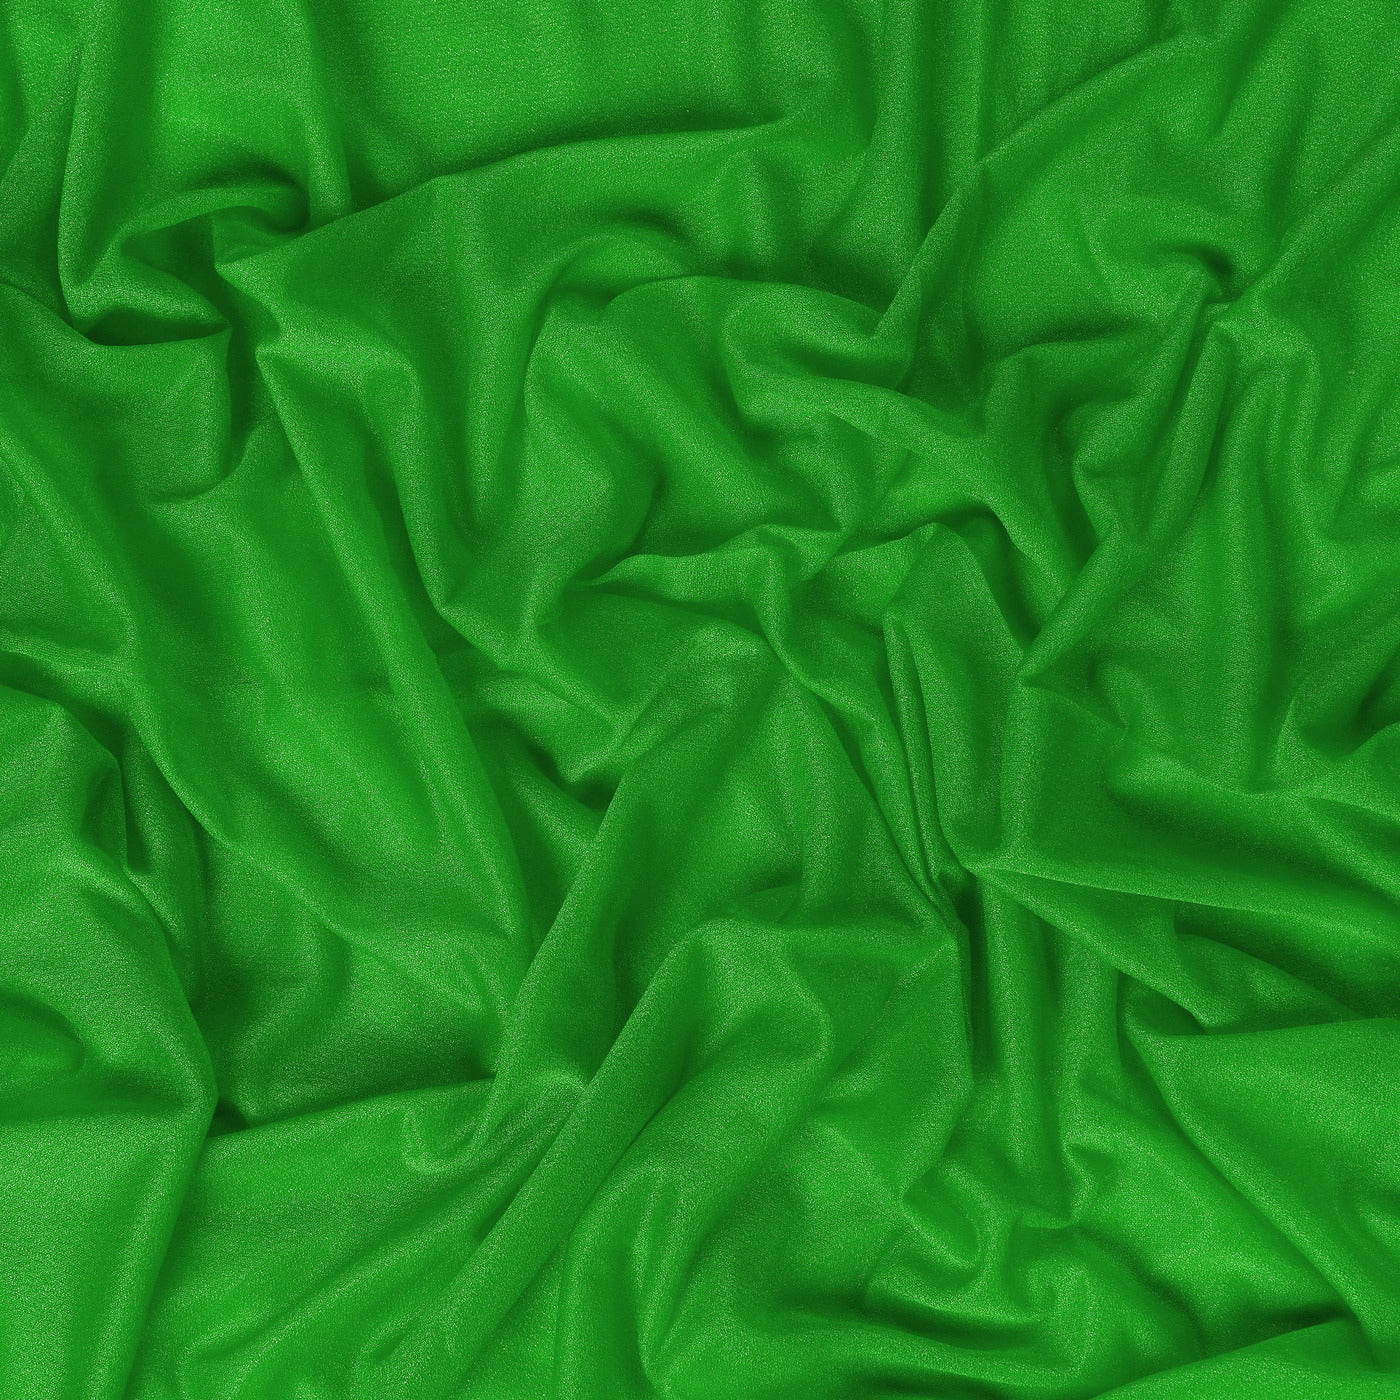 Green,3f11a307-37fd-4a08-85e1-0af91e4ddd06